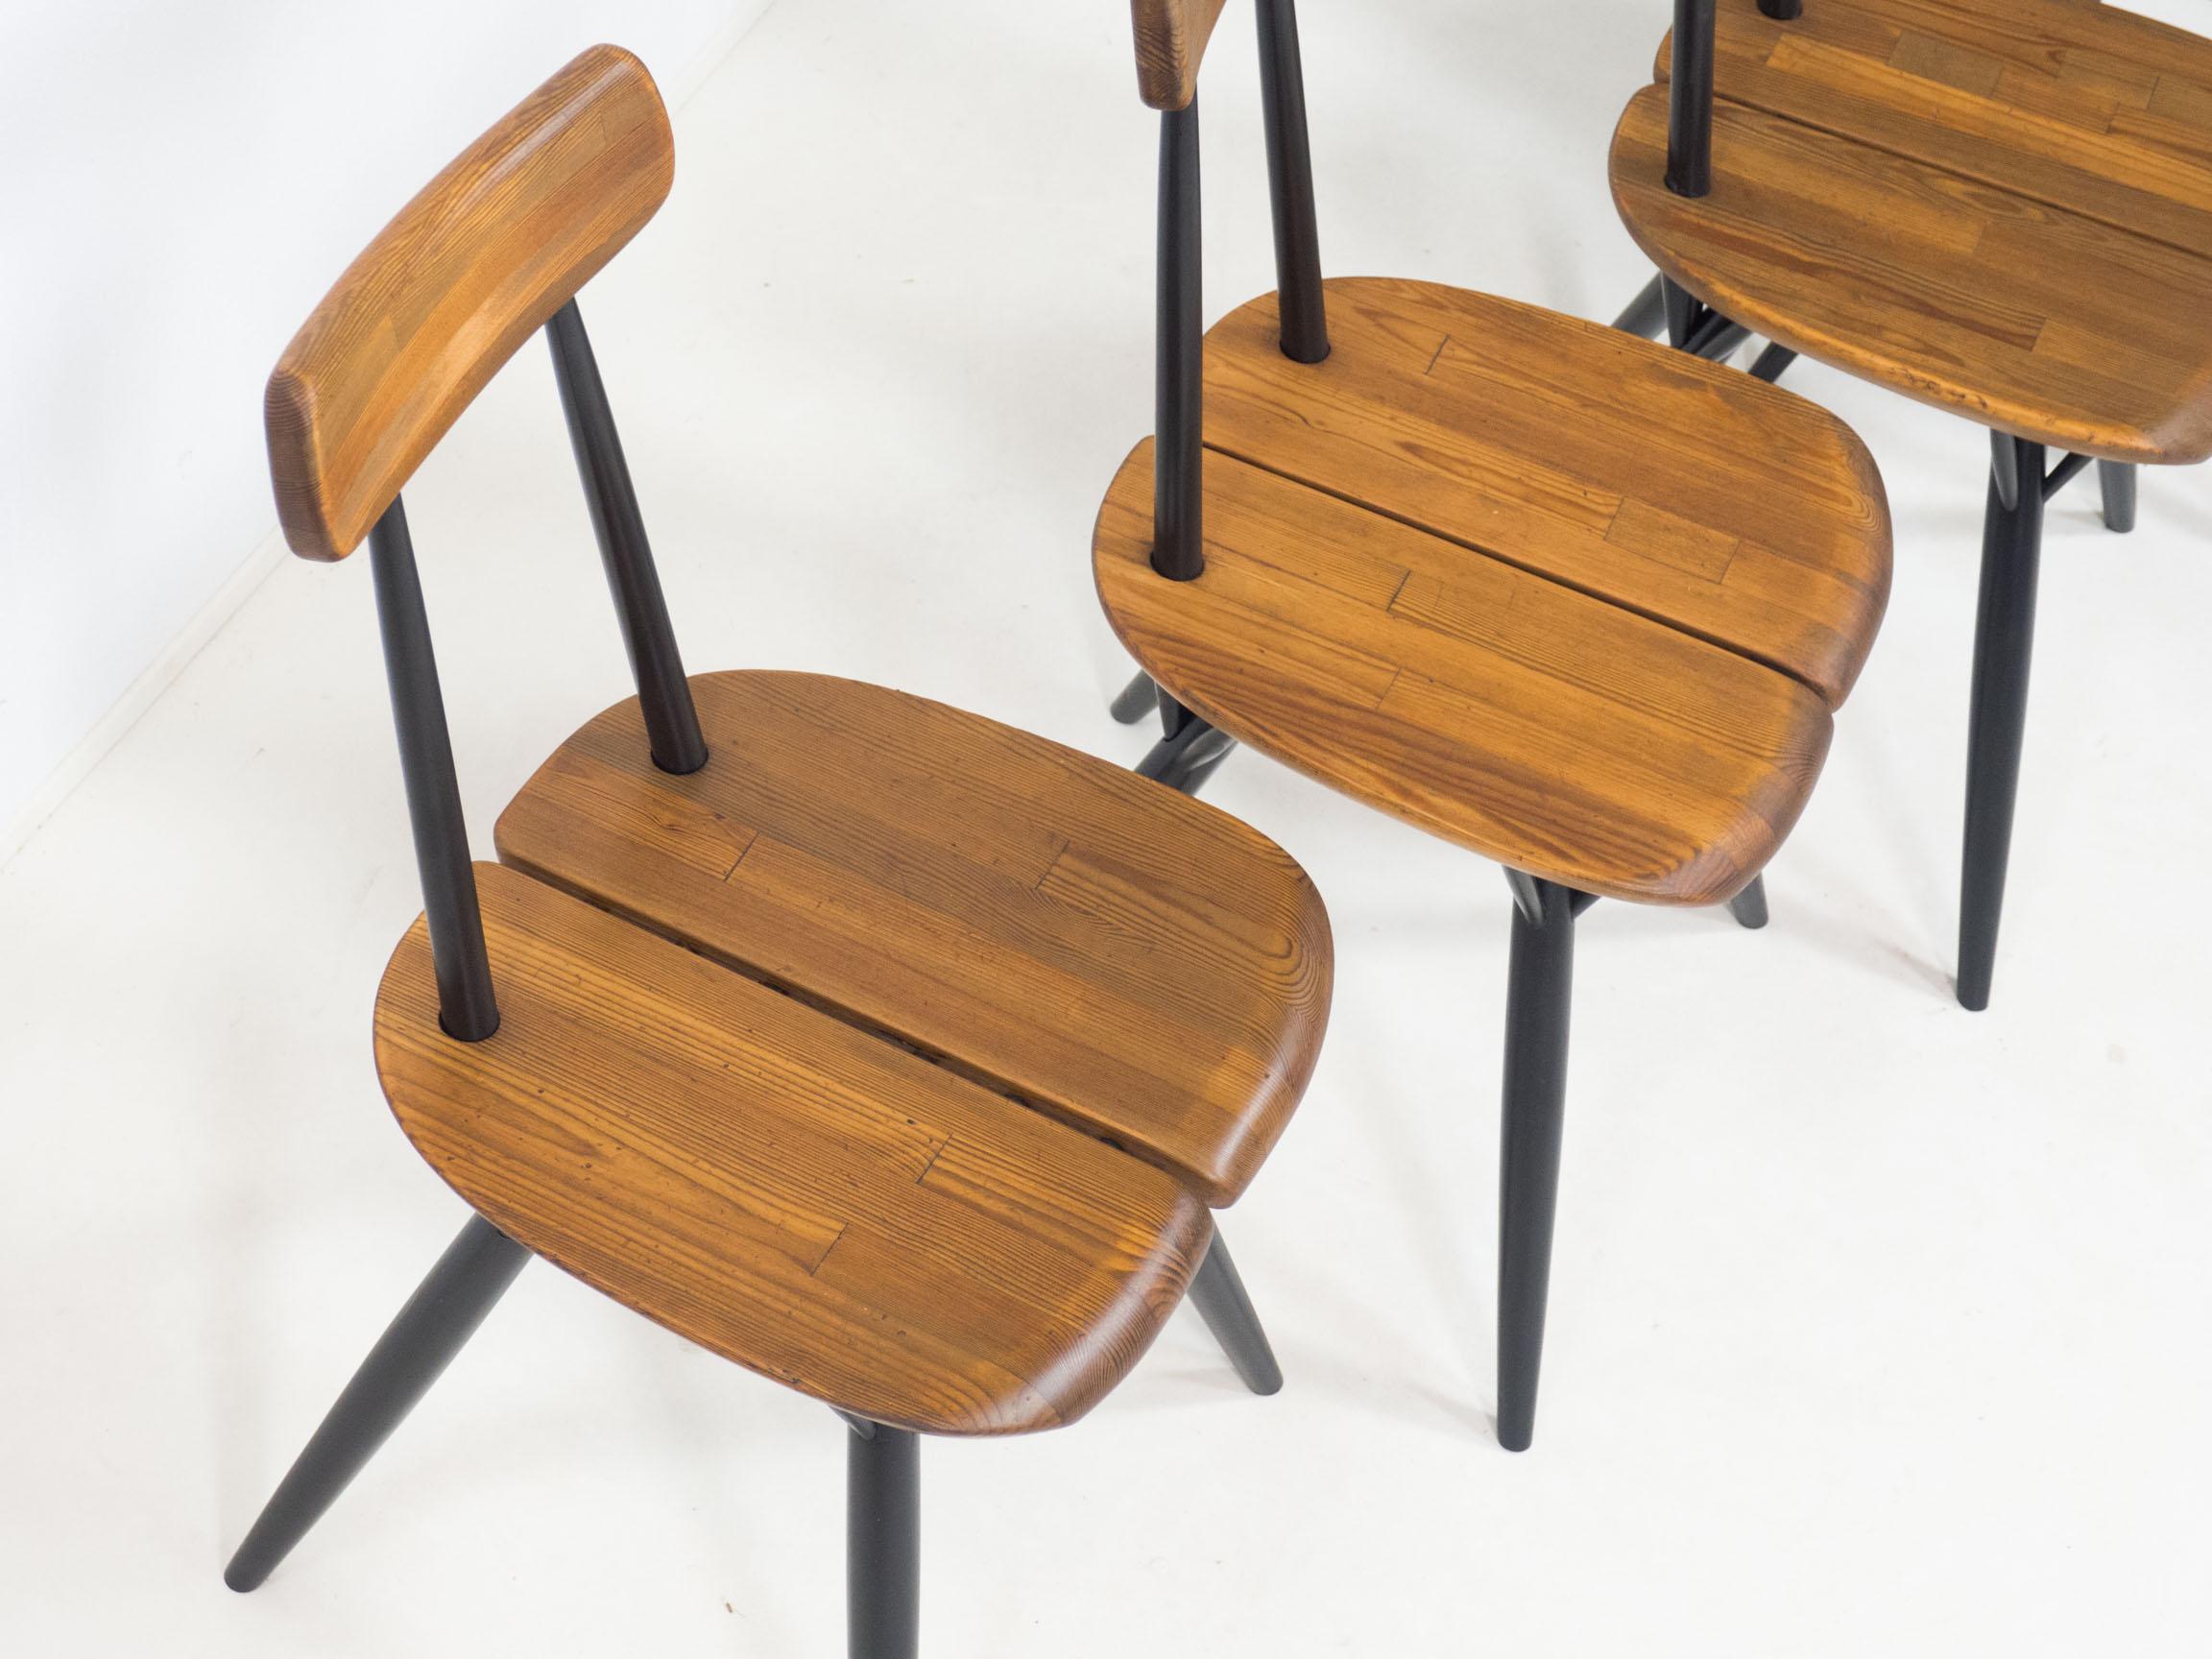 Ensemble de quatre chaises Pirkka précoces conçues par Ilmari Tapiovaara et fabriquées par Laukaan Puu de Finlad dans les années 1950.

Ces chaises au design emblématique sont dotées d'une assise et d'un dossier fabriqués à partir de plusieurs